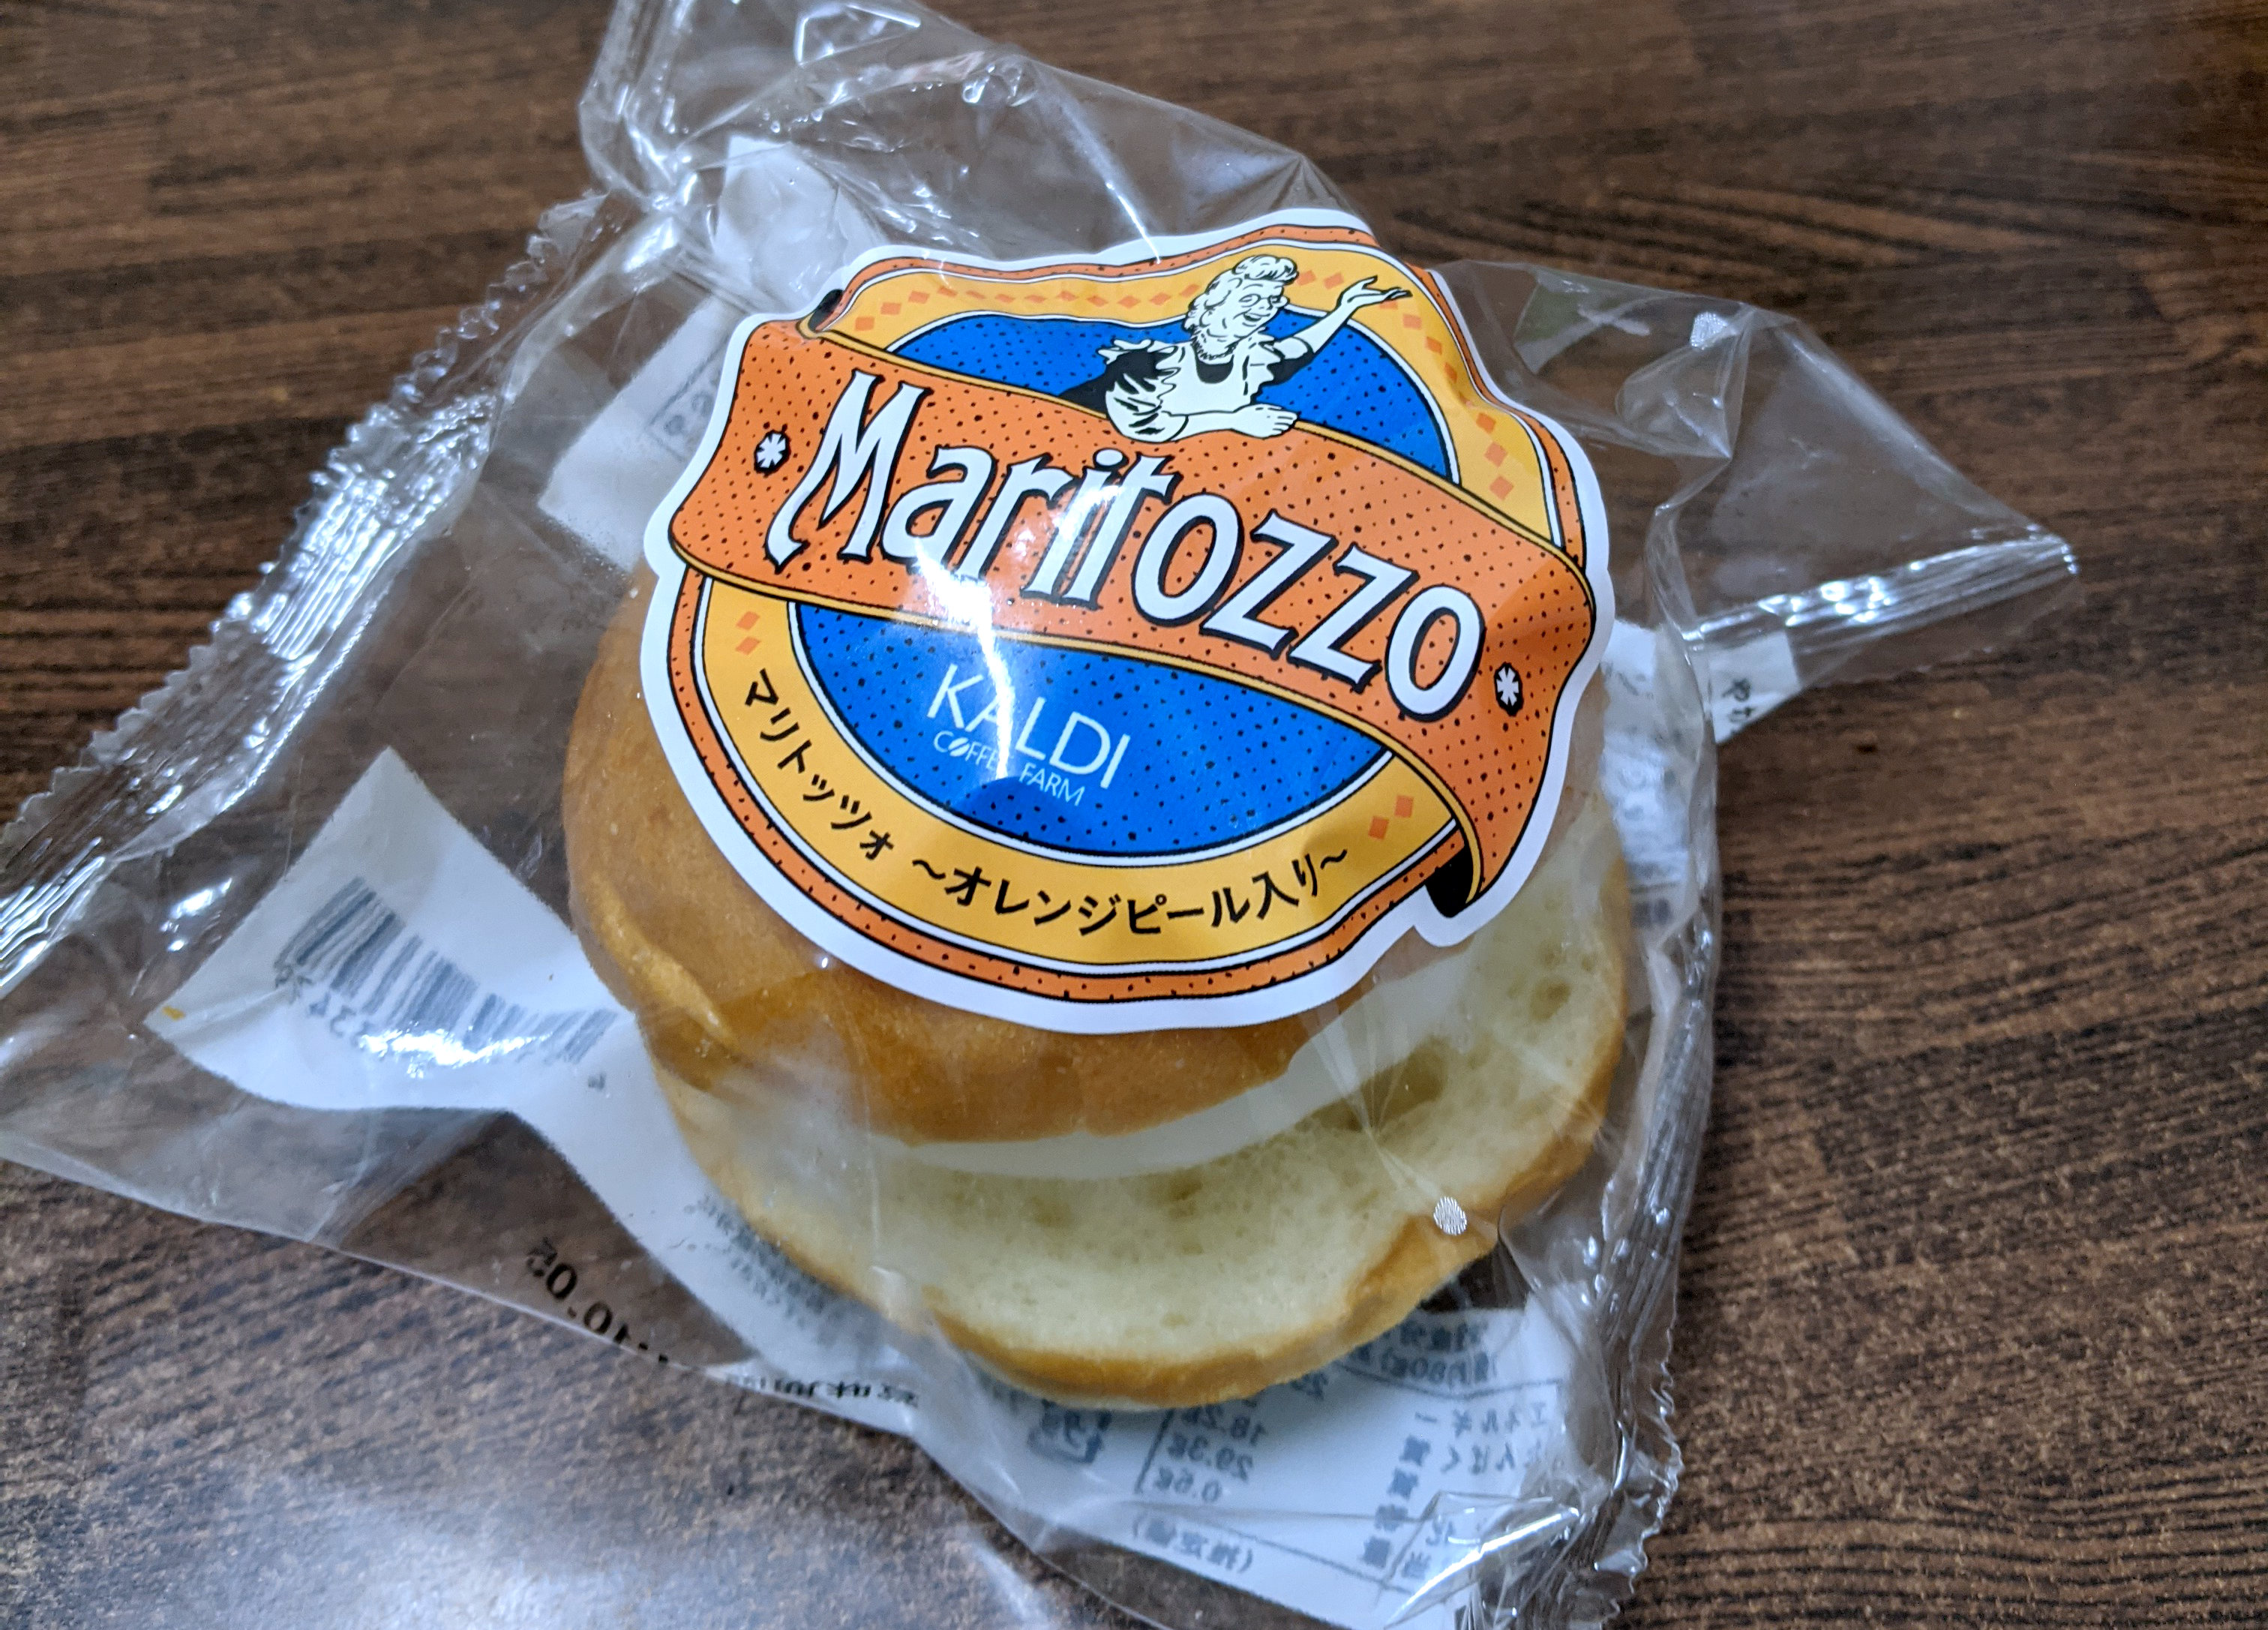 人気過ぎて品薄になっているカルディの 冷凍マリトッツォ を食べてみた 税込270円とは思えないクオリティ ロケットニュース24